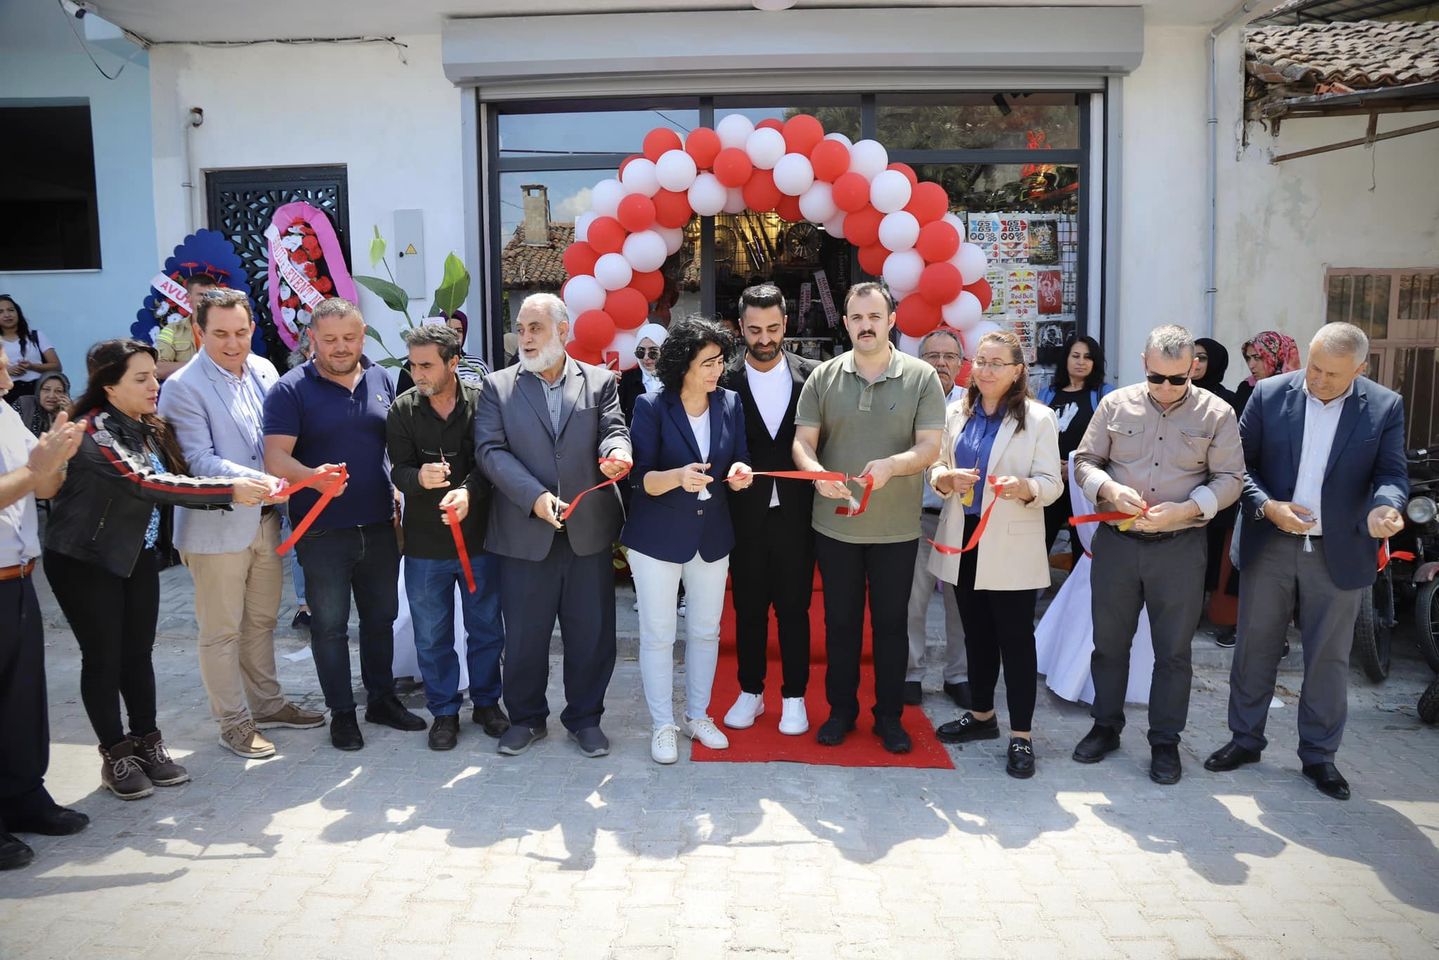 Yeni Yedek Parça Dükkanı Açılışı, Yerel Ekonomiyi Canlandıracak